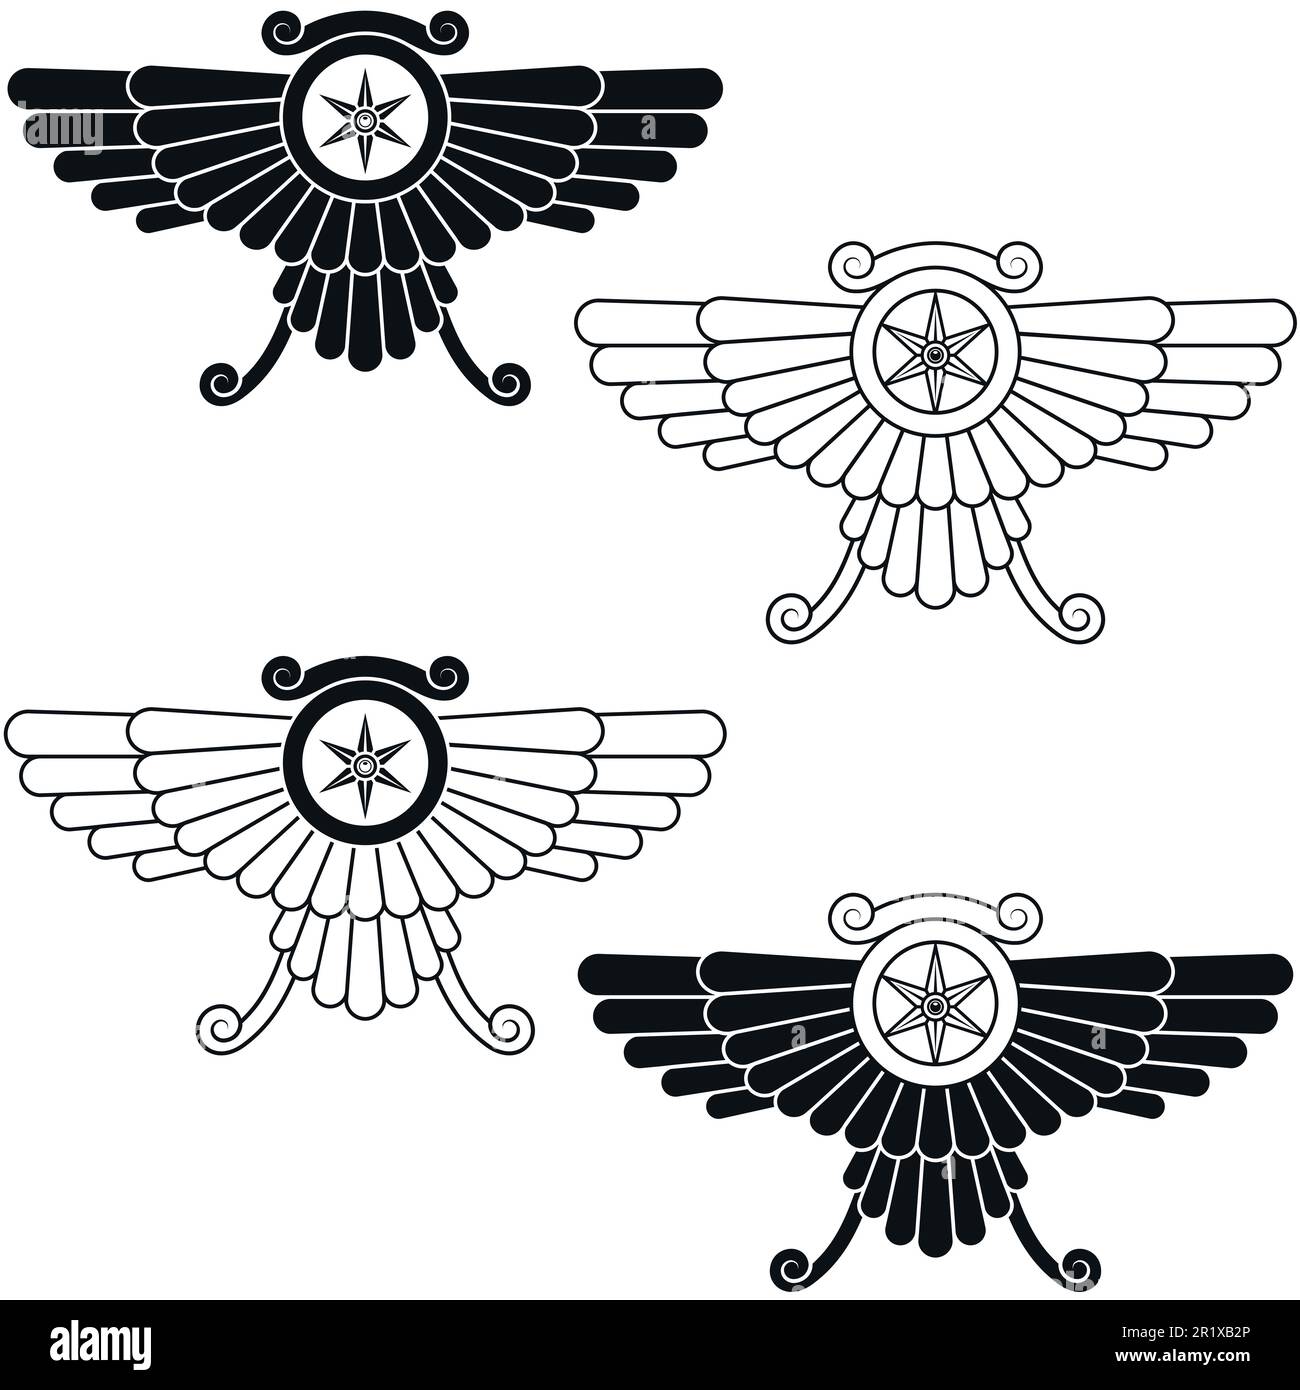 Disegno vettoriale del simbolo di Faravahar, disco solare alato, simbolo della religione zoroastriana Illustrazione Vettoriale